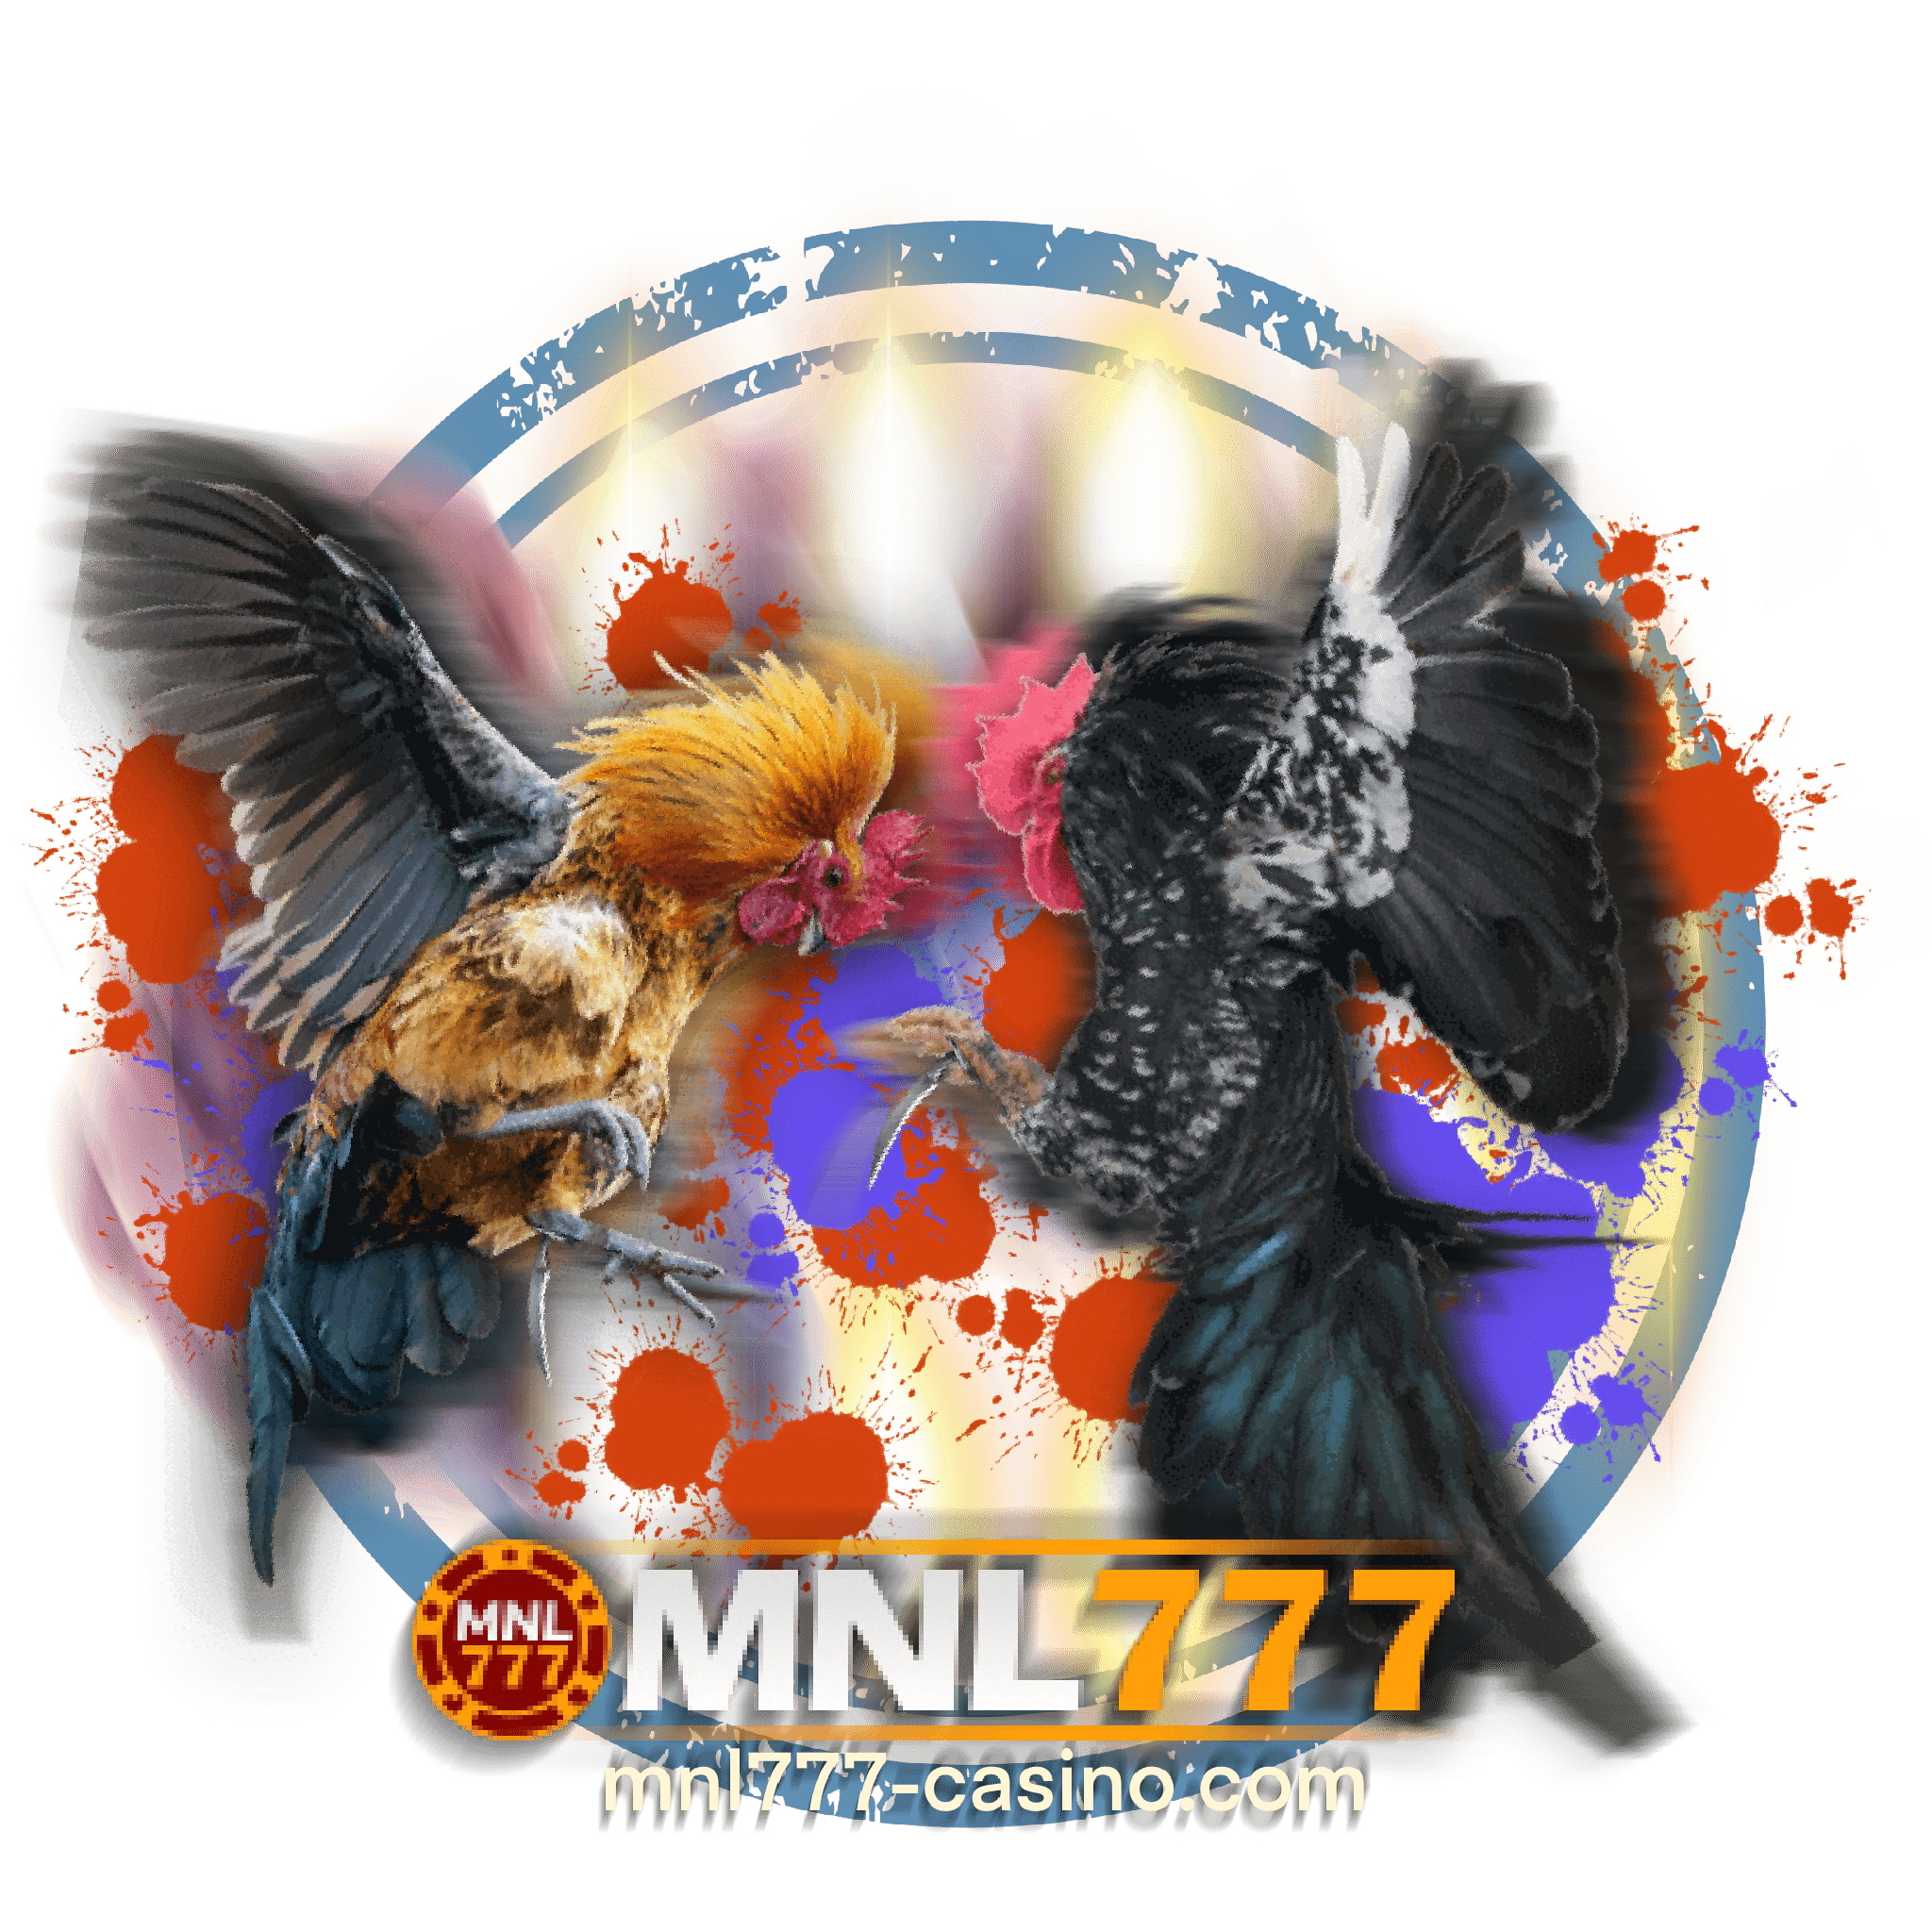 mnl777 online casino